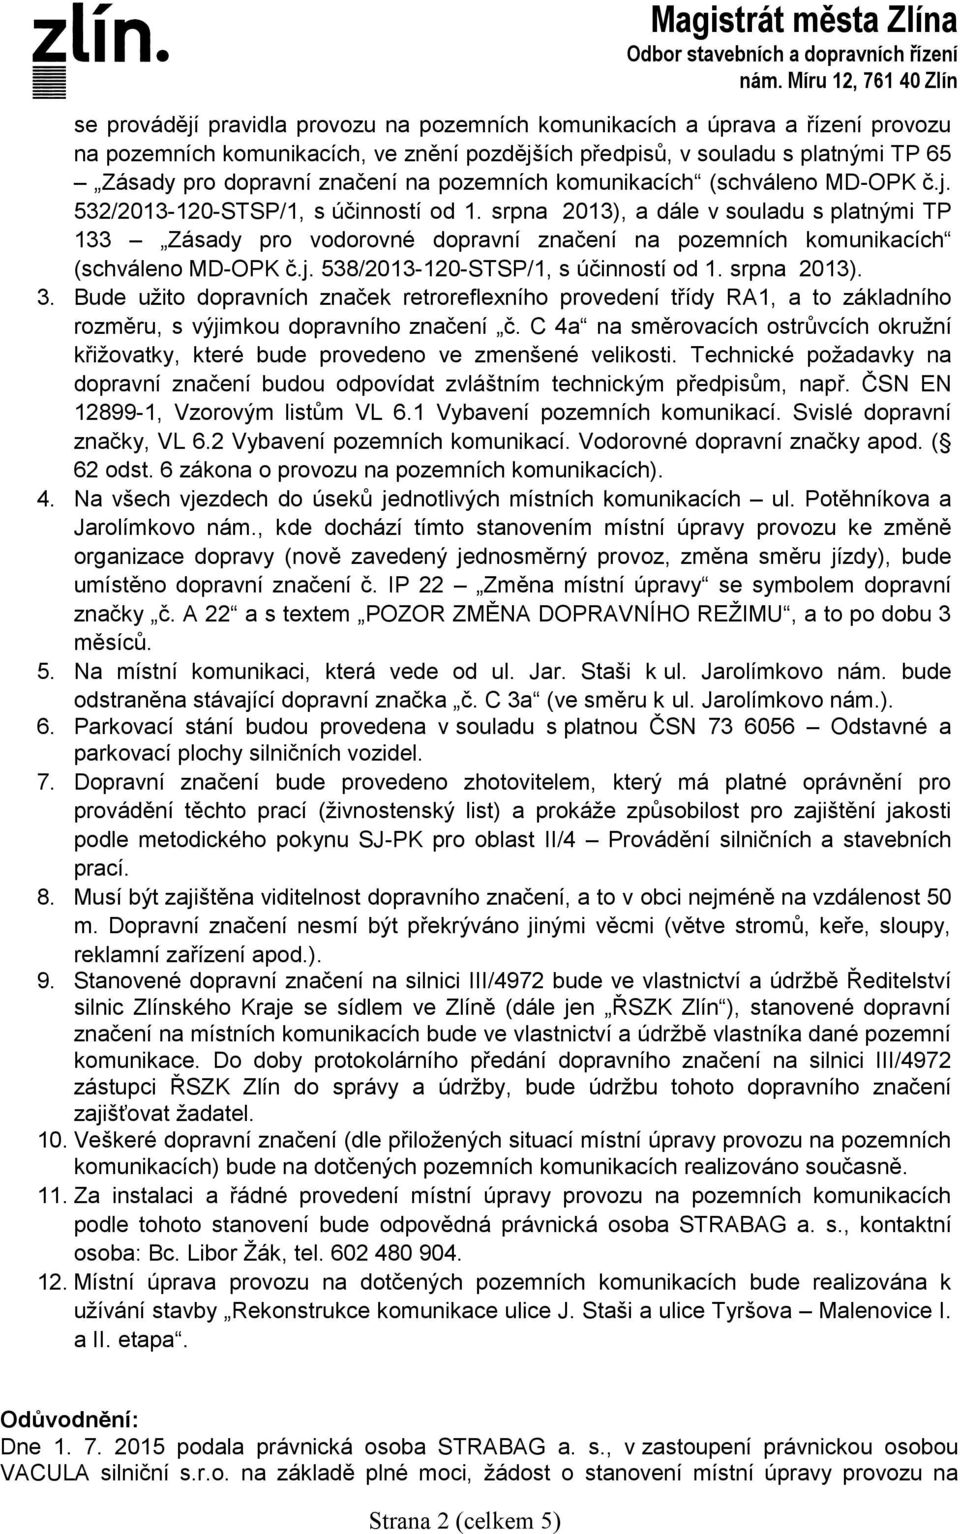 srpna 2013), a dále v souladu s platnými TP 133 Zásady pro vodorovné dopravní značení na pozemních komunikacích (schváleno MD-OPK č.j. 538/2013-120-STSP/1, s účinností od 1. srpna 2013). 3.